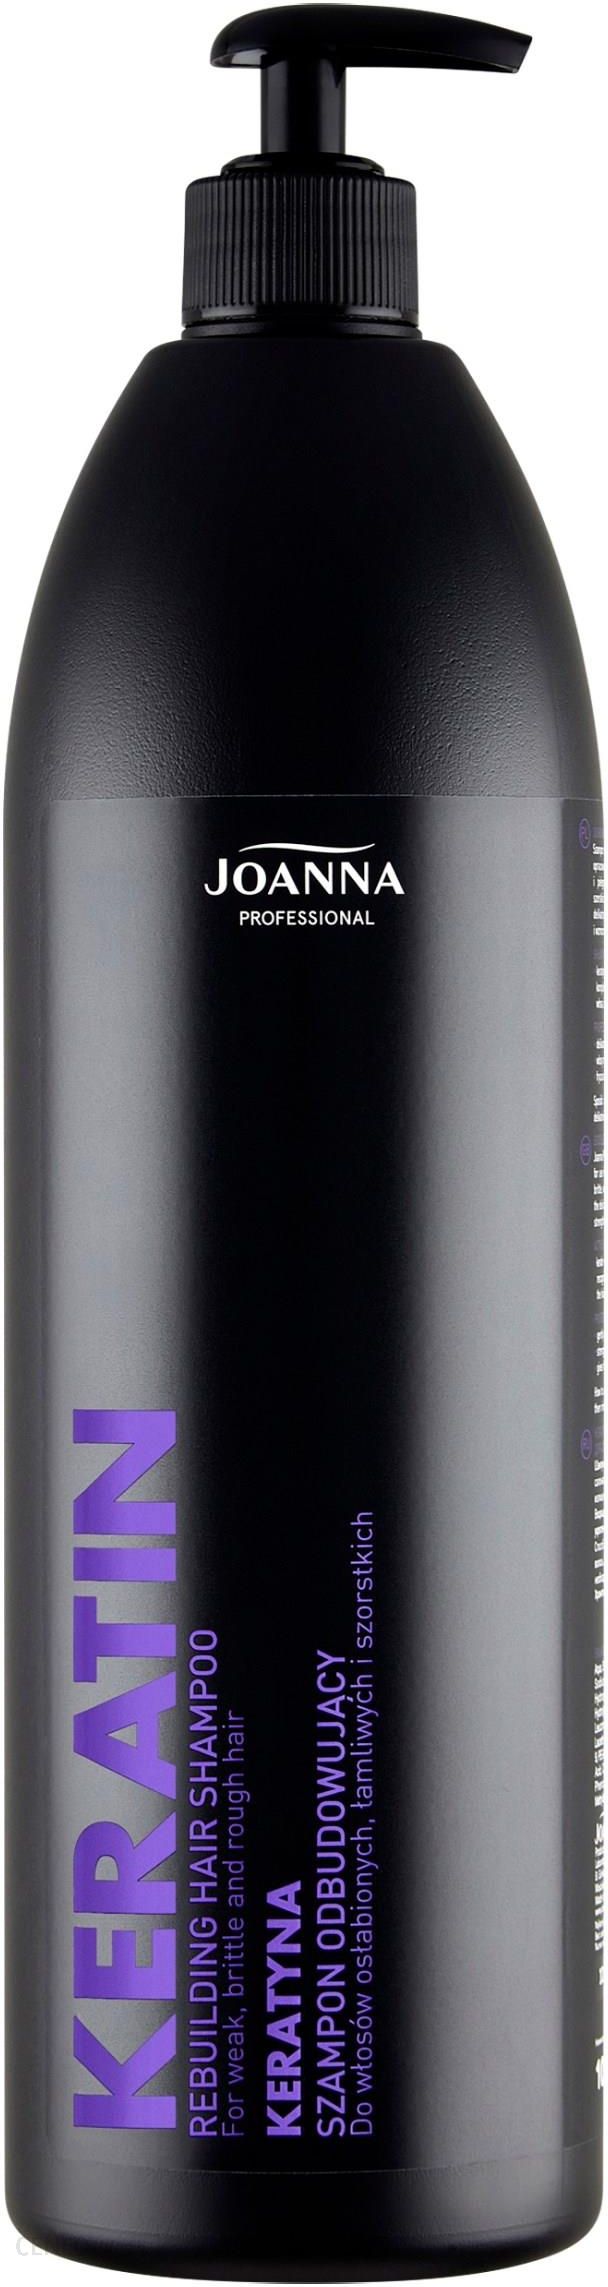 joanna professional szampon do włosów odbudowujący z keratyną opinie